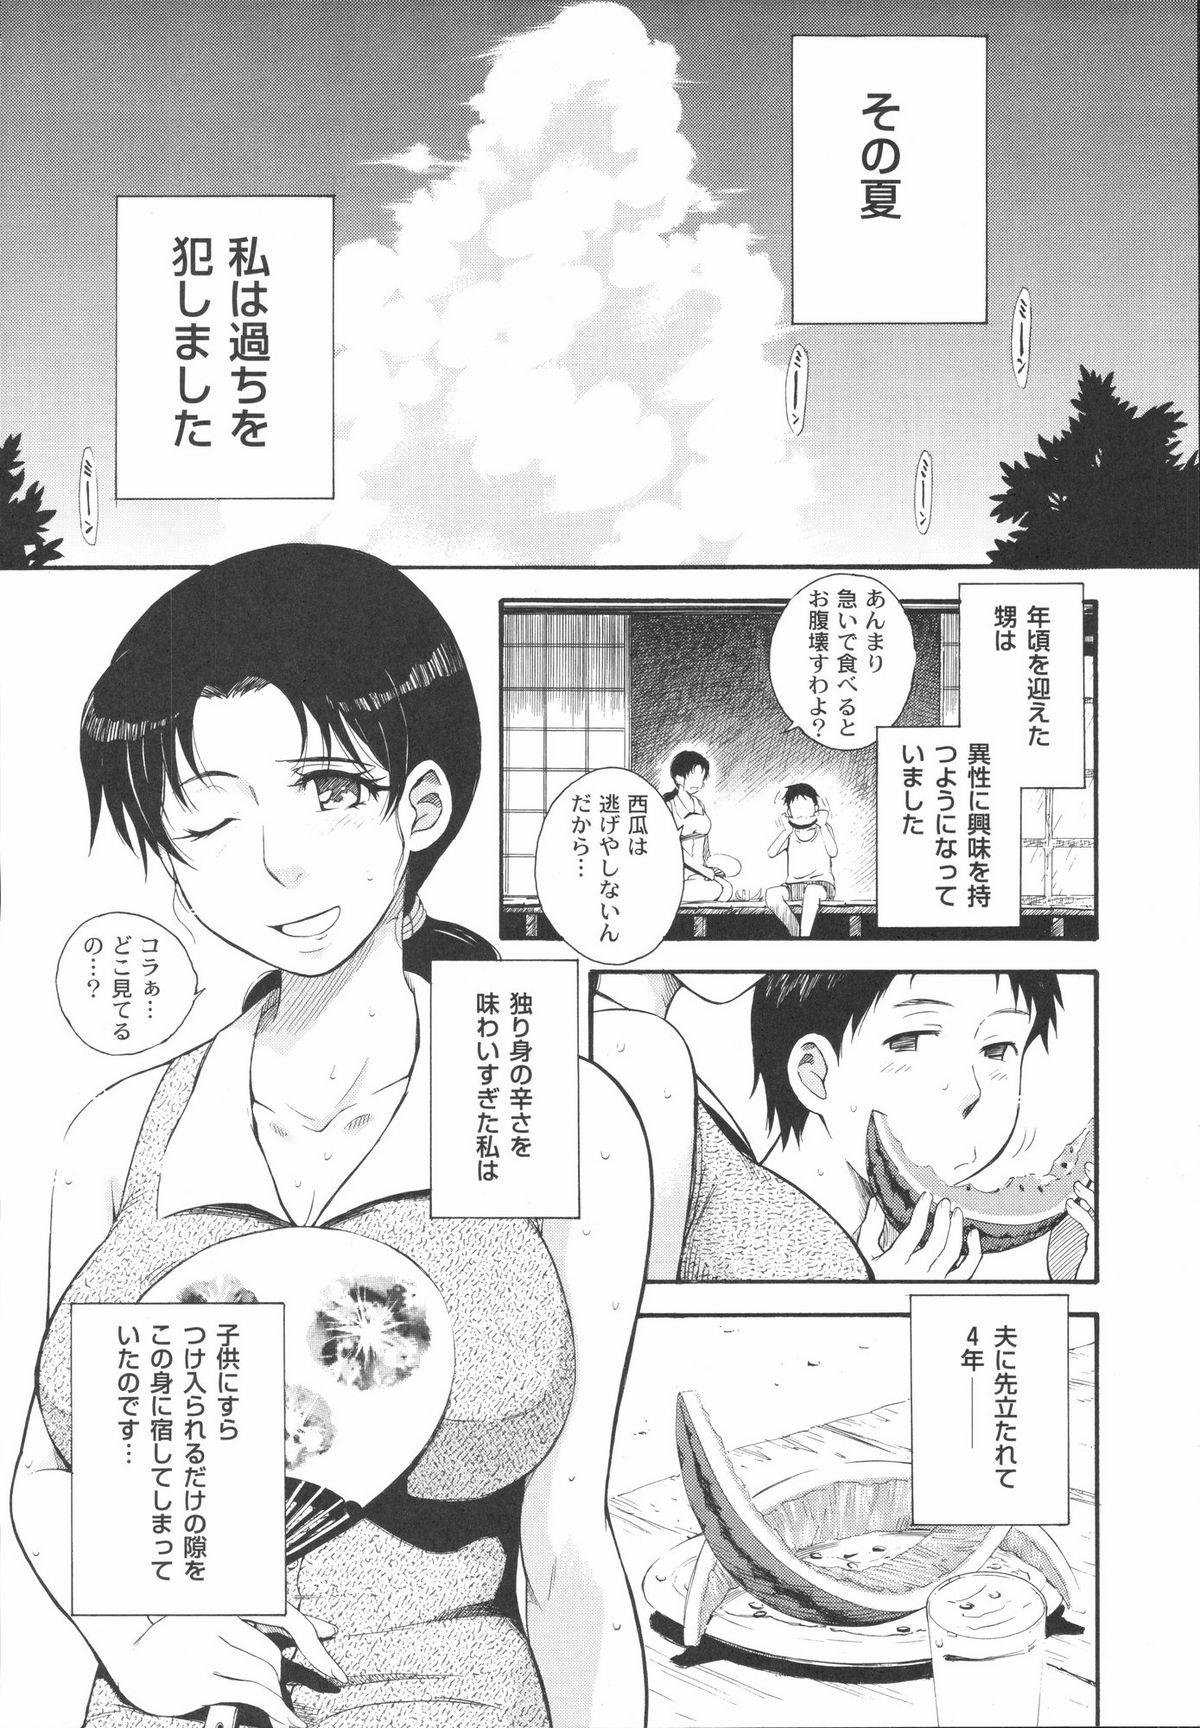 Soloboy Shinzui Vol. 1 Clip - Page 9